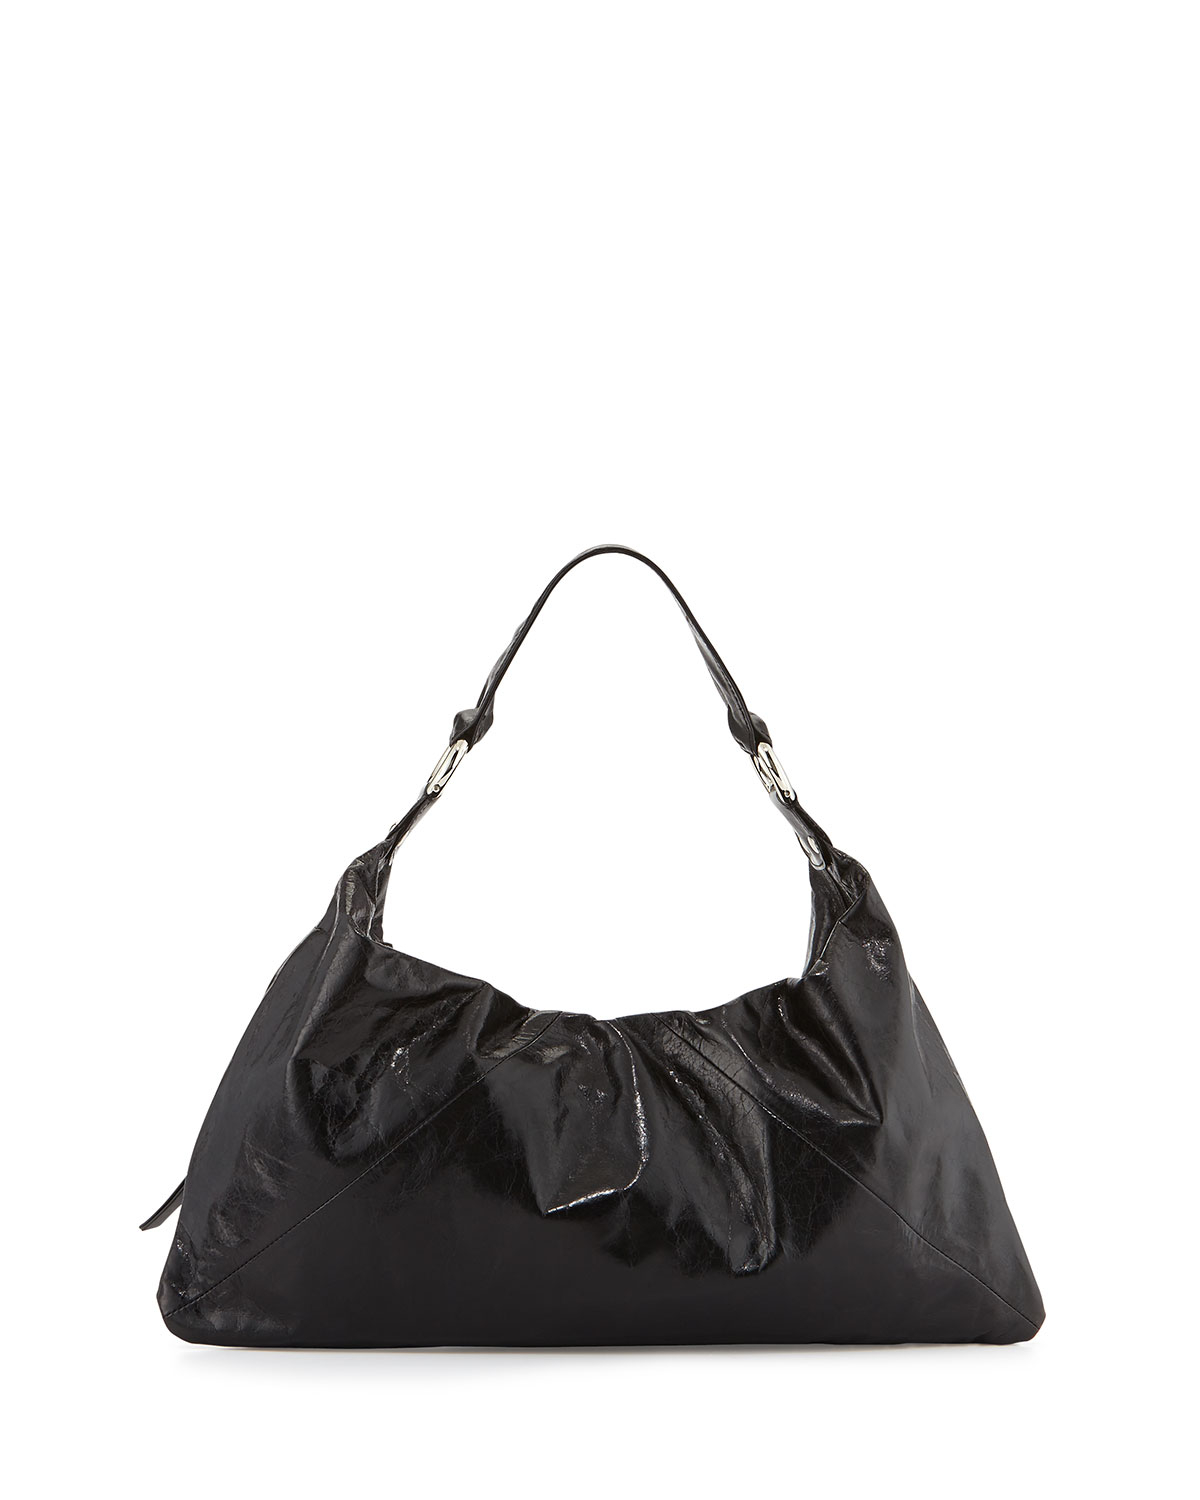 Download Lyst - Hobo Paulette Glossy Leather Shoulder Bag in Black